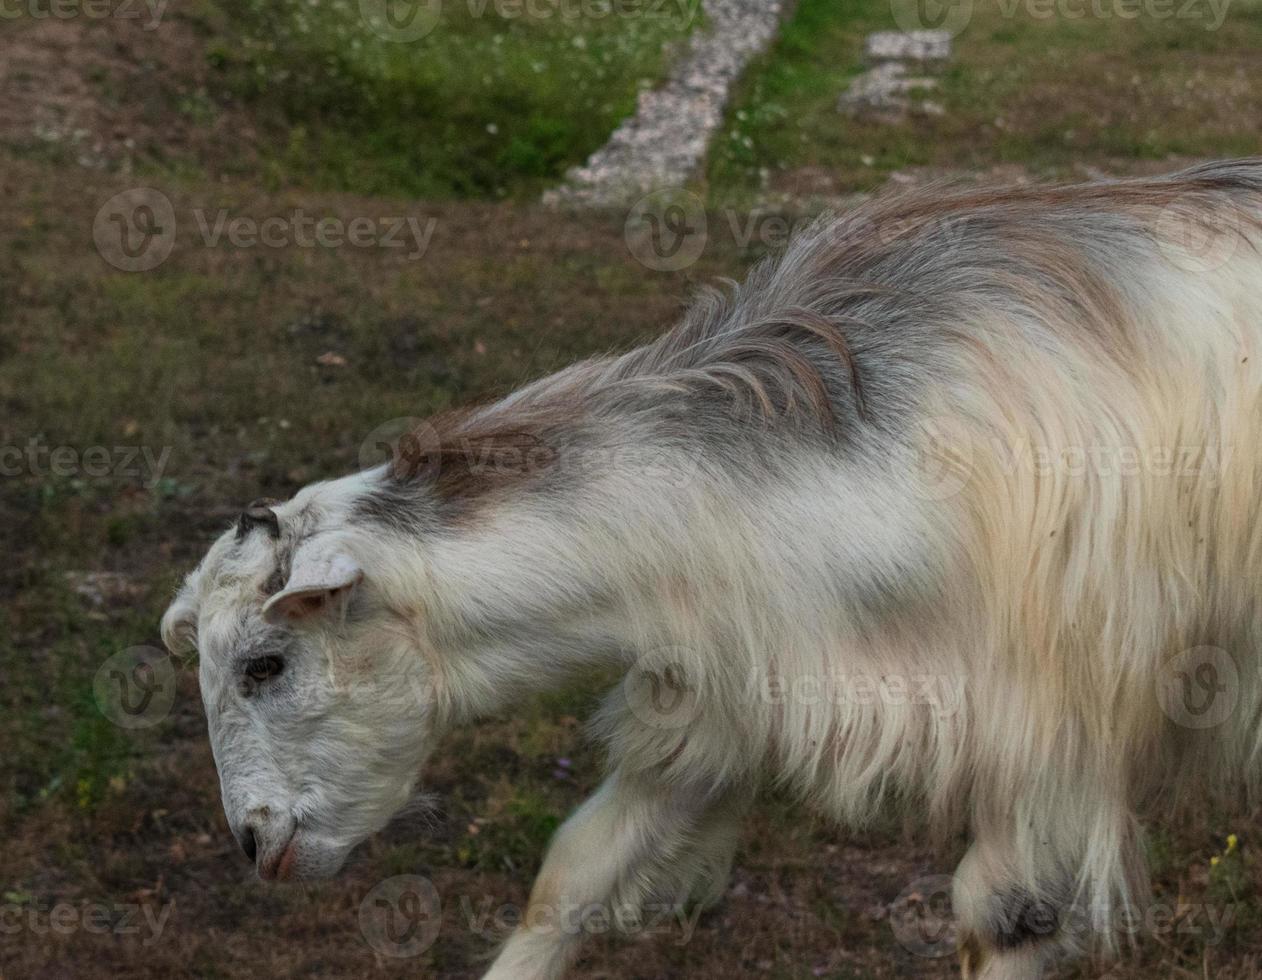 cabra comiendo hierba, retrato de animales domésticos en la naturaleza foto